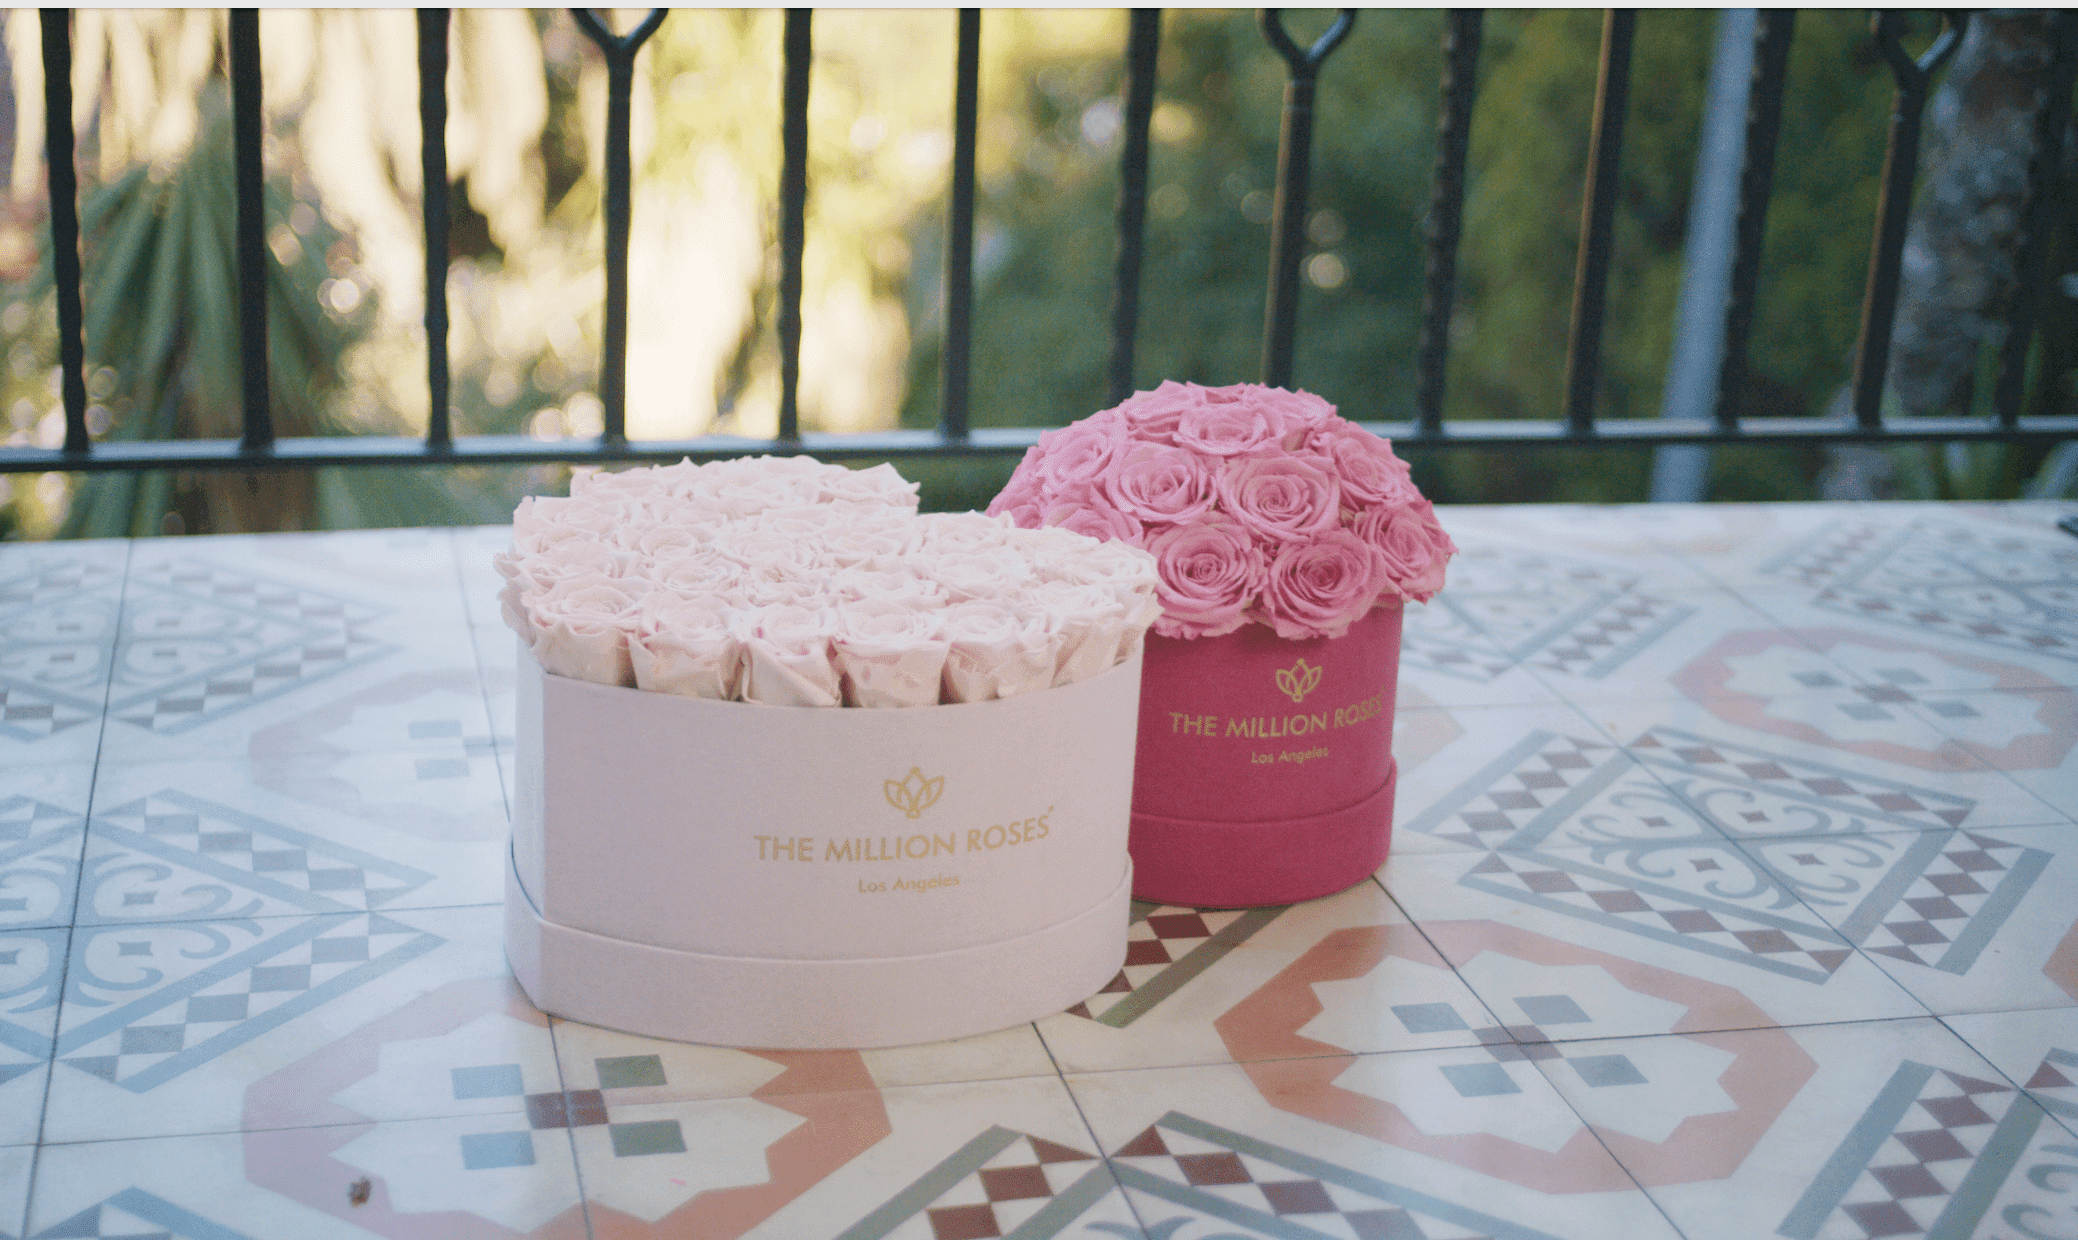 September Flowers - White Heart Rose Box & Pink Rounded Rose Box - The Million Roses®